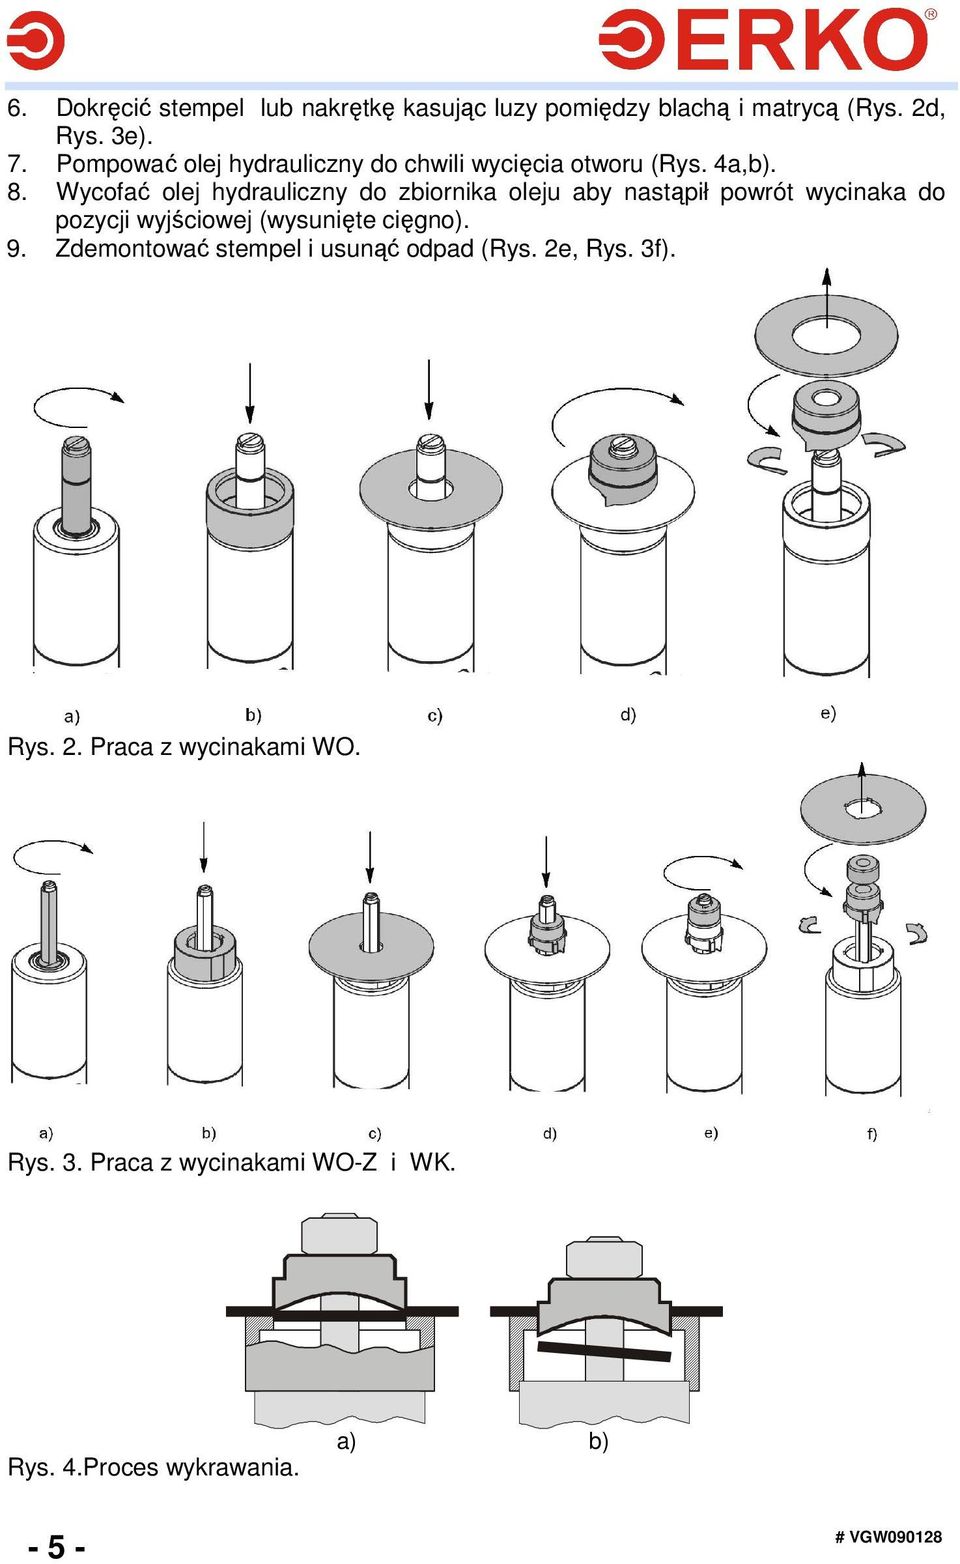 Wycofać olej hydrauliczny do zbiornika oleju aby nastąpił powrót wycinaka do pozycji wyjściowej (wysunięte